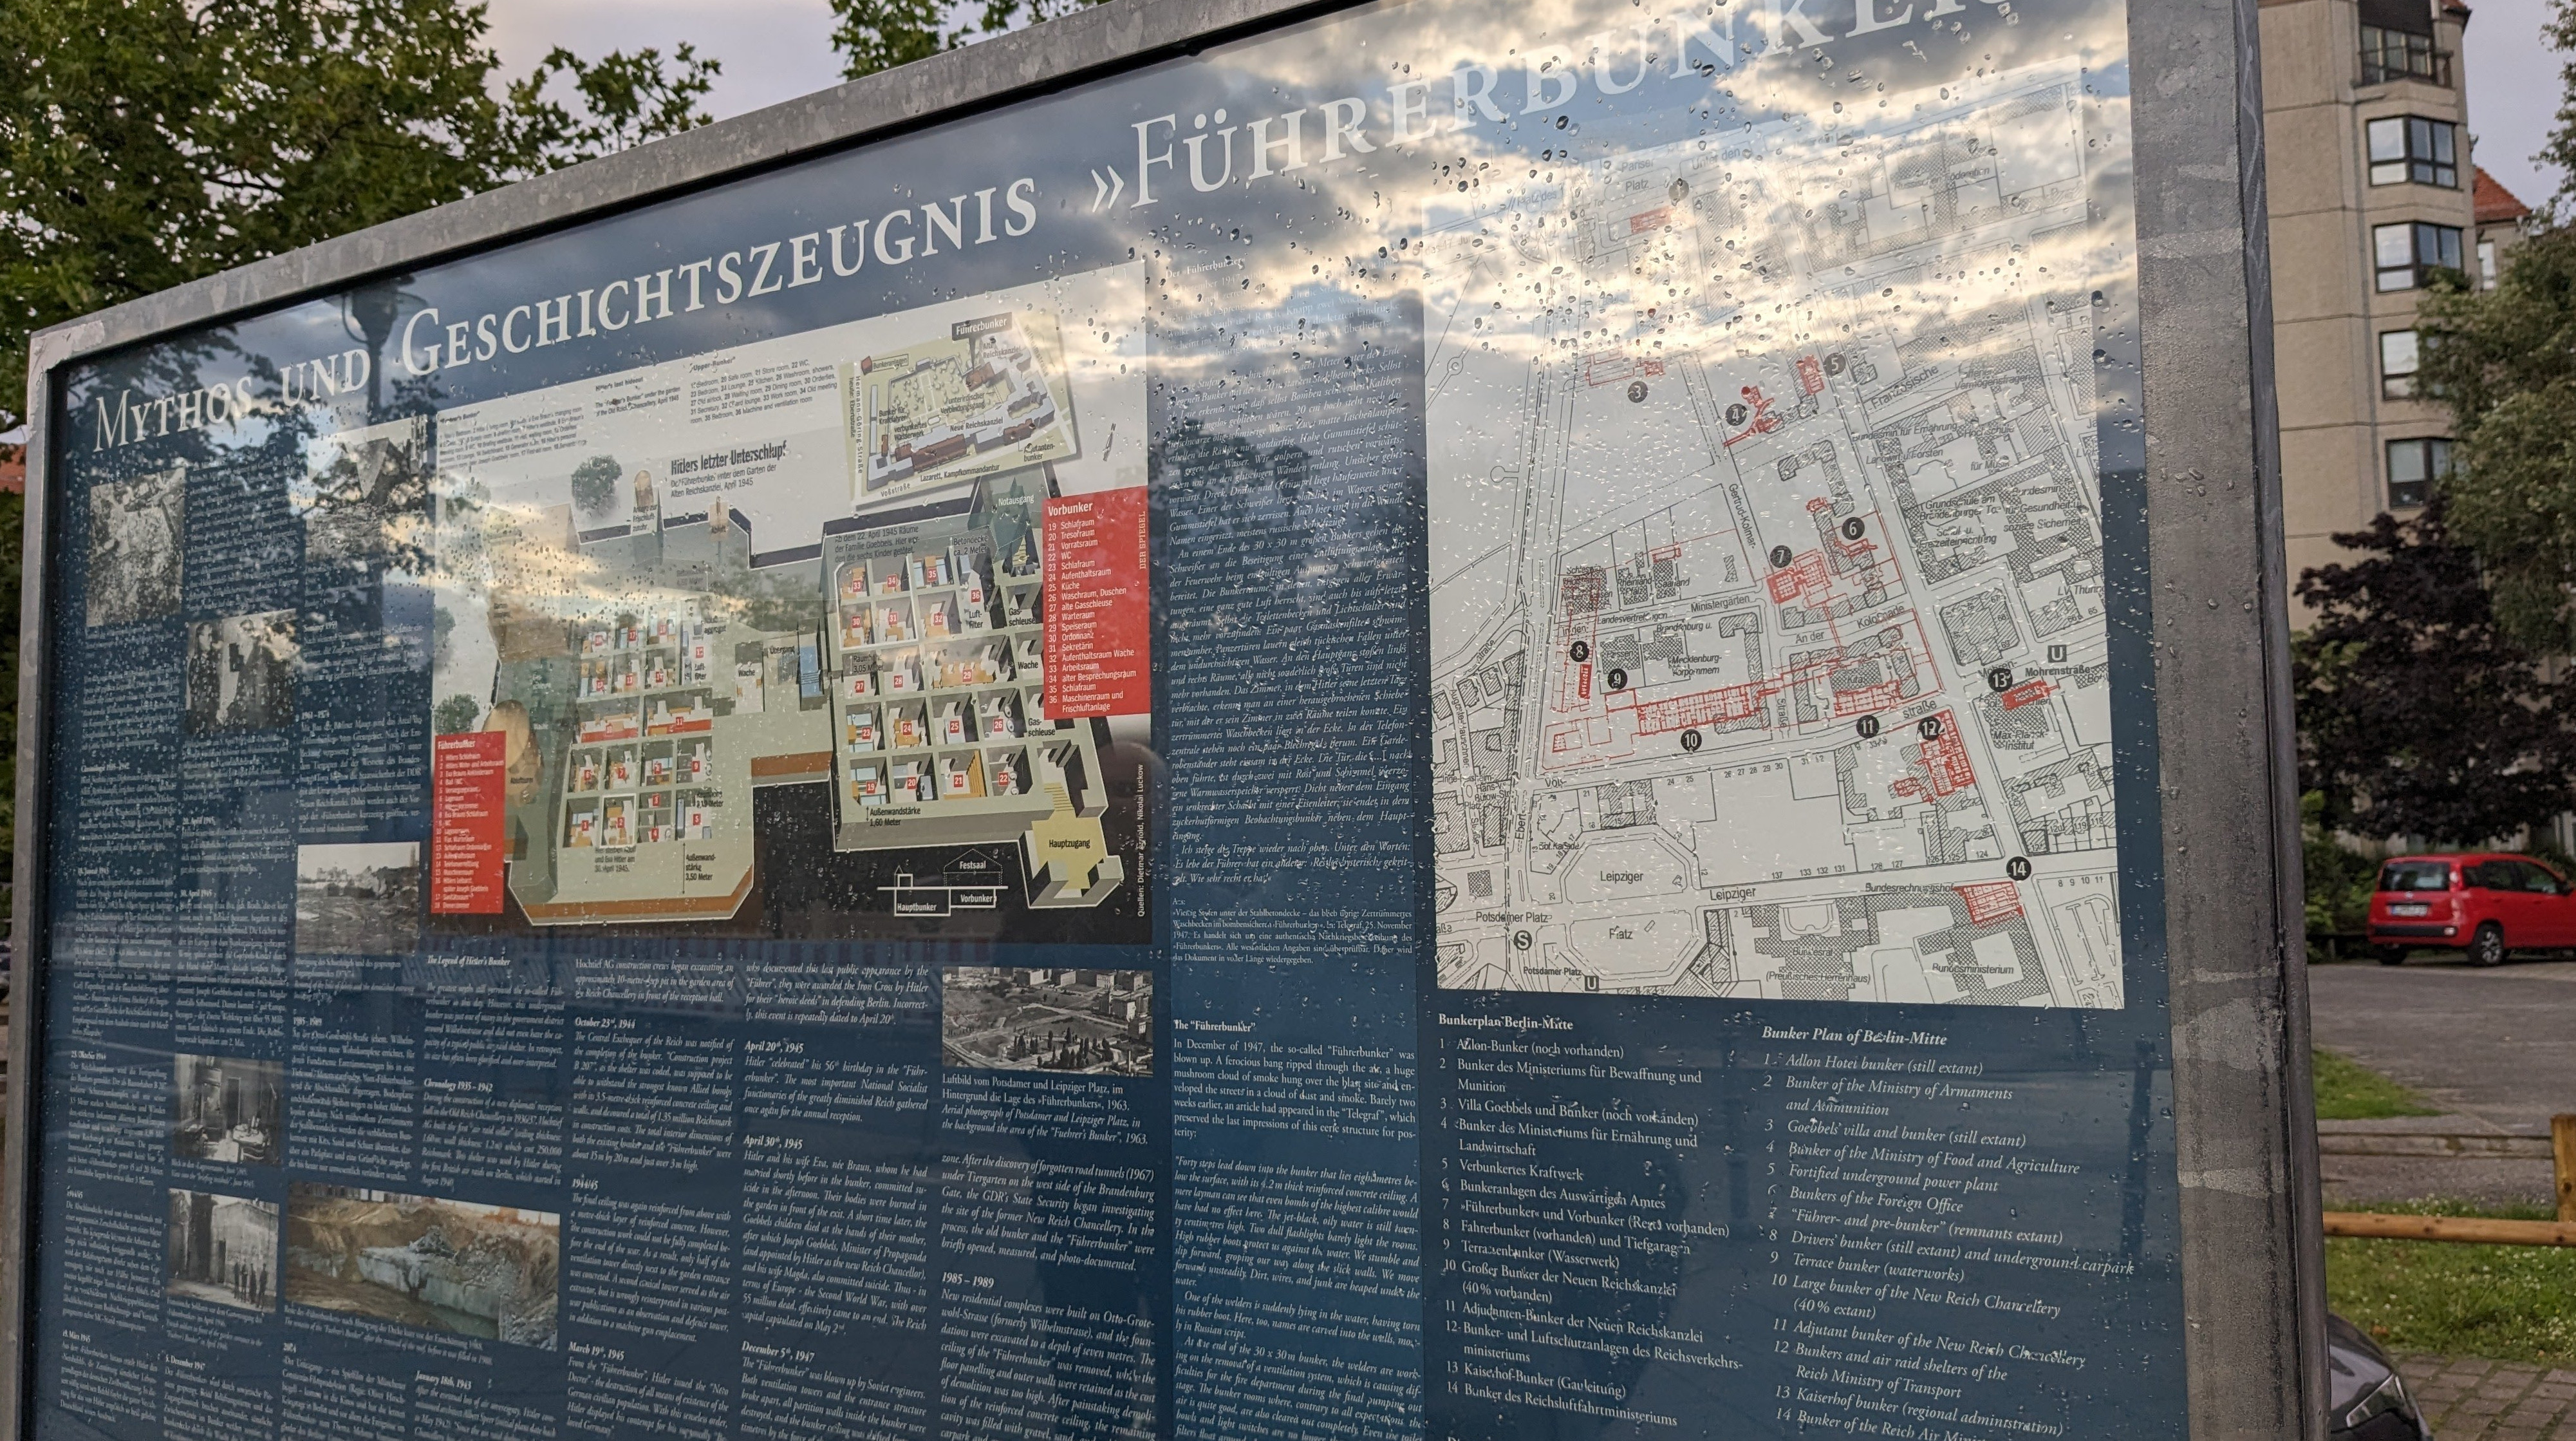 مکان تاریخی "Führerbunker